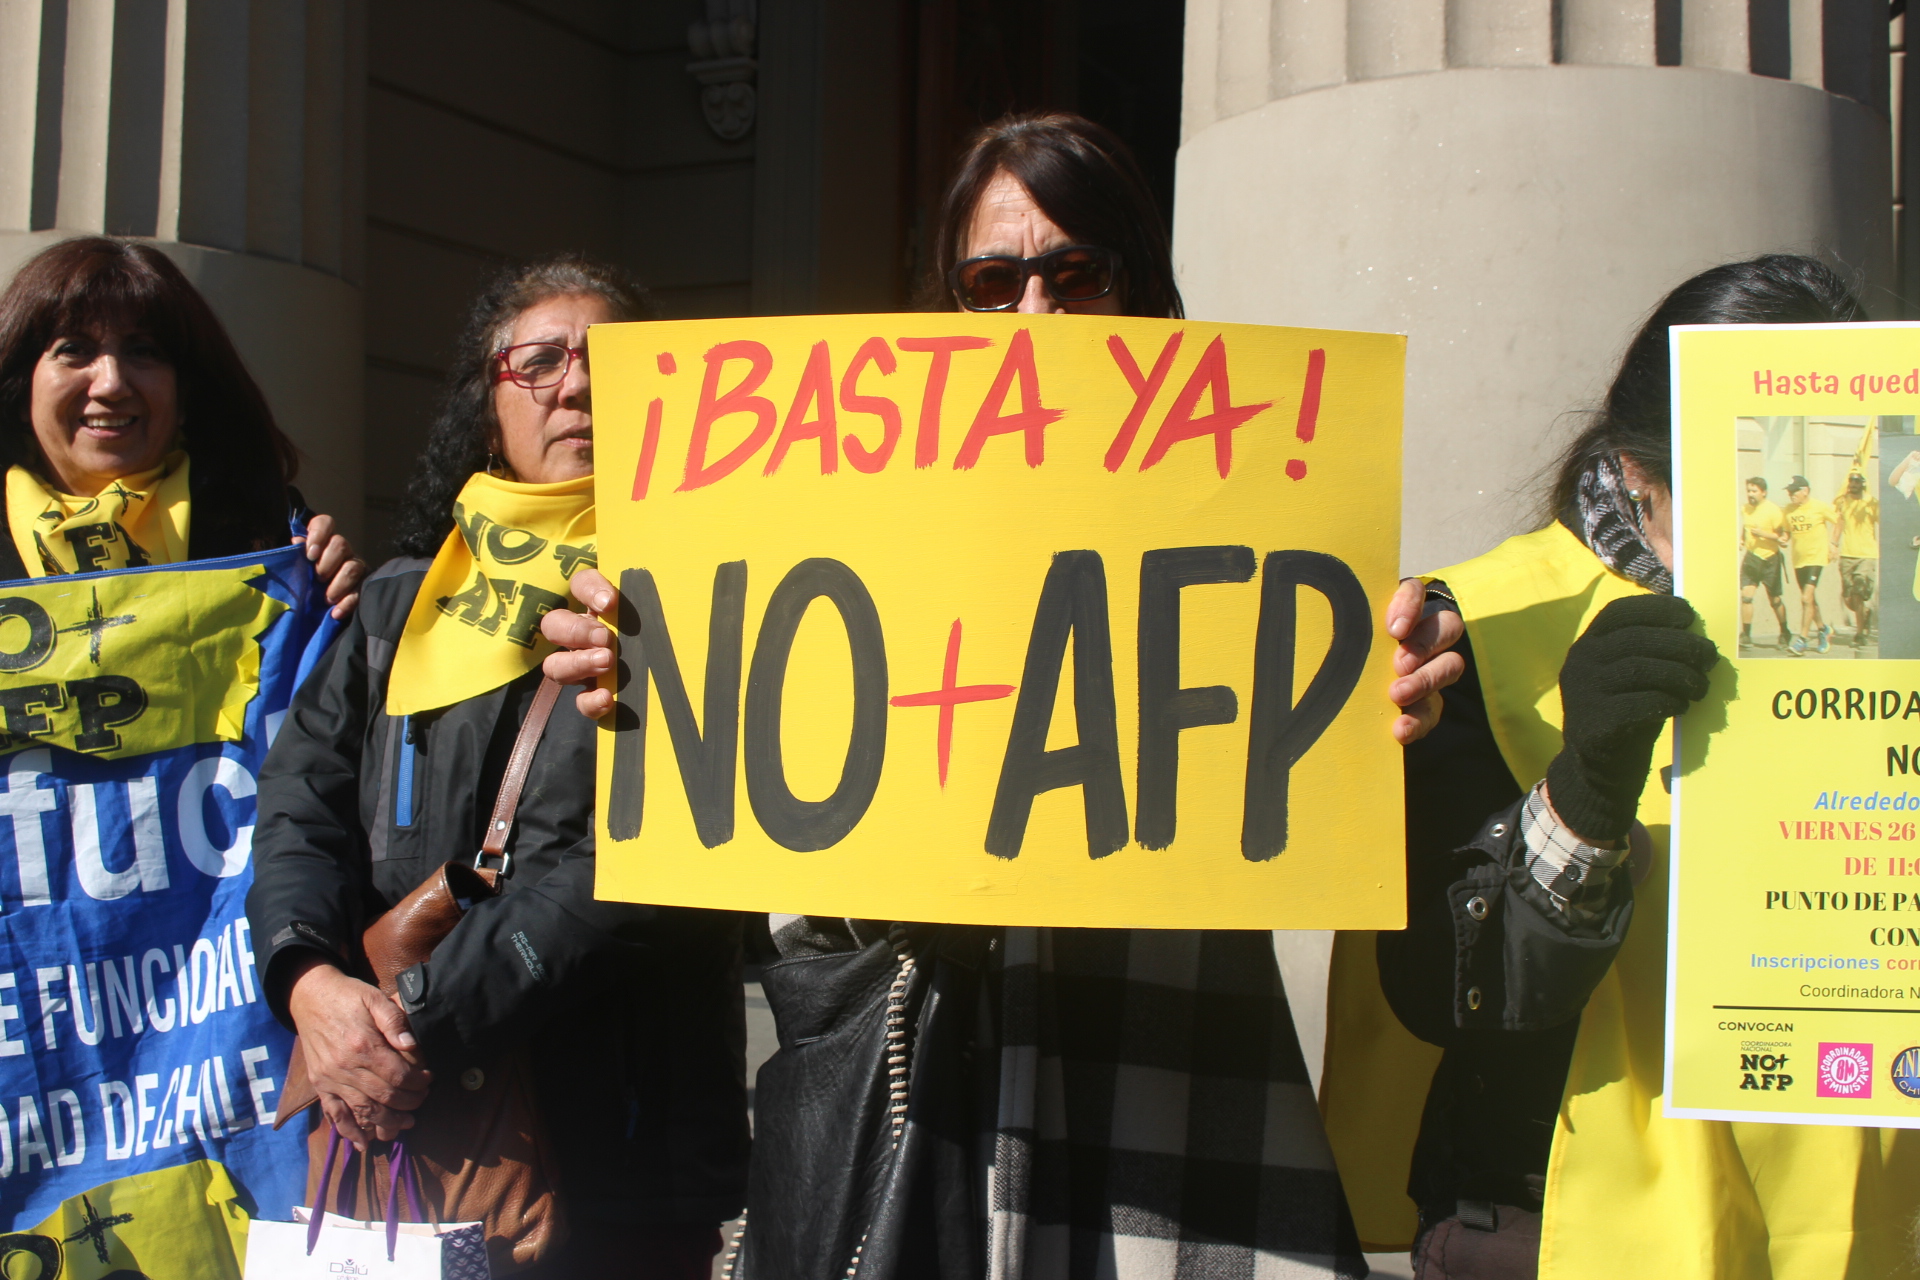 No mas AFP